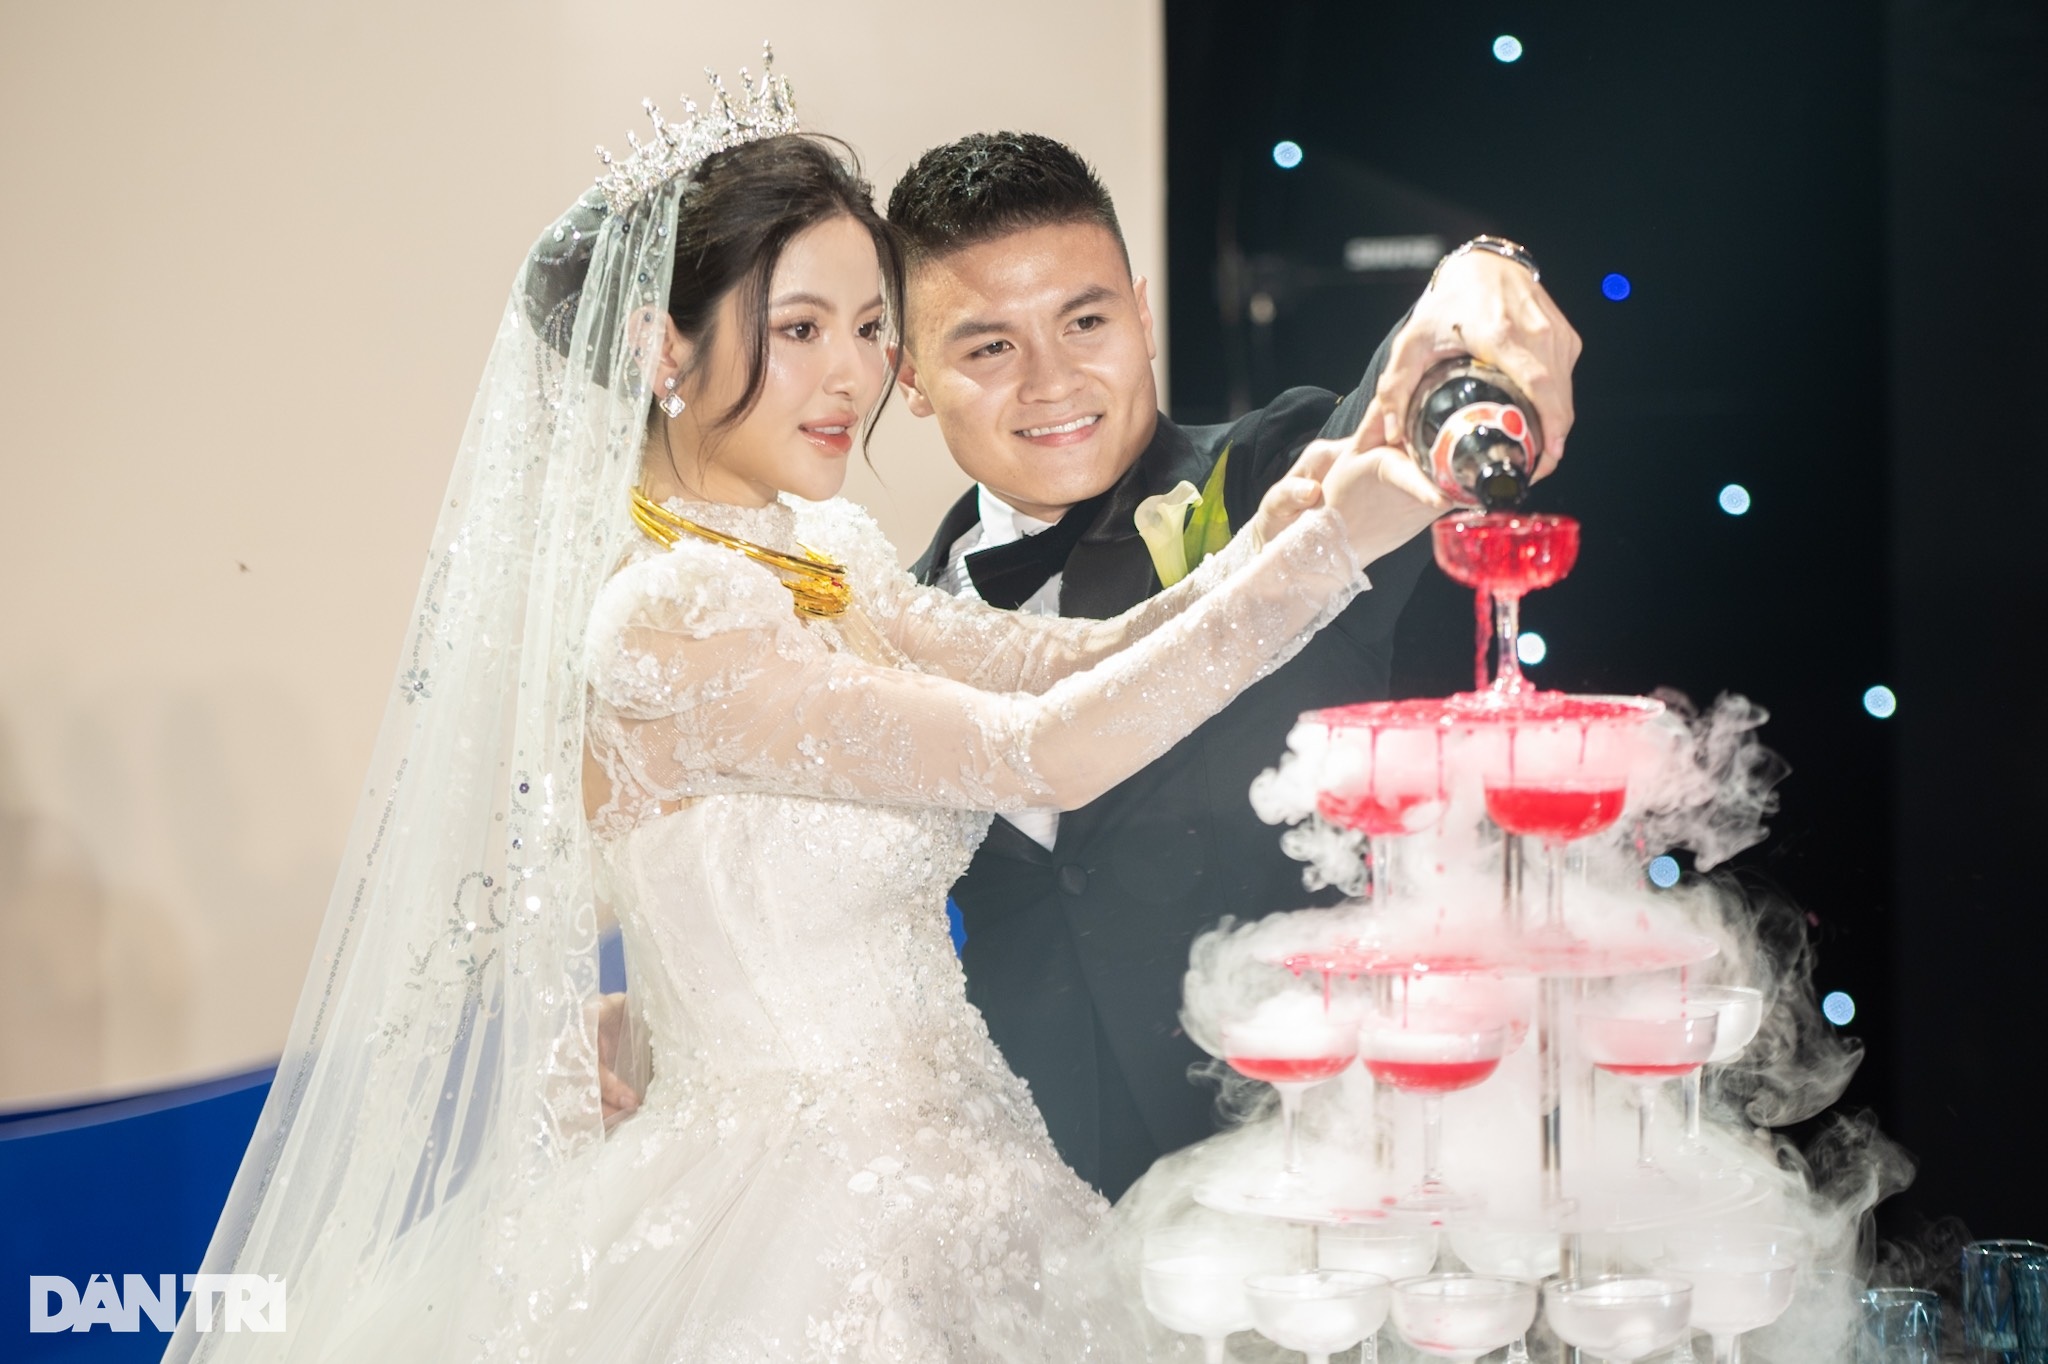 View - HLV Park Hang Seo nắm chặt tay Quang Hải, rạng rỡ đến dự đám cưới | Báo Dân trí